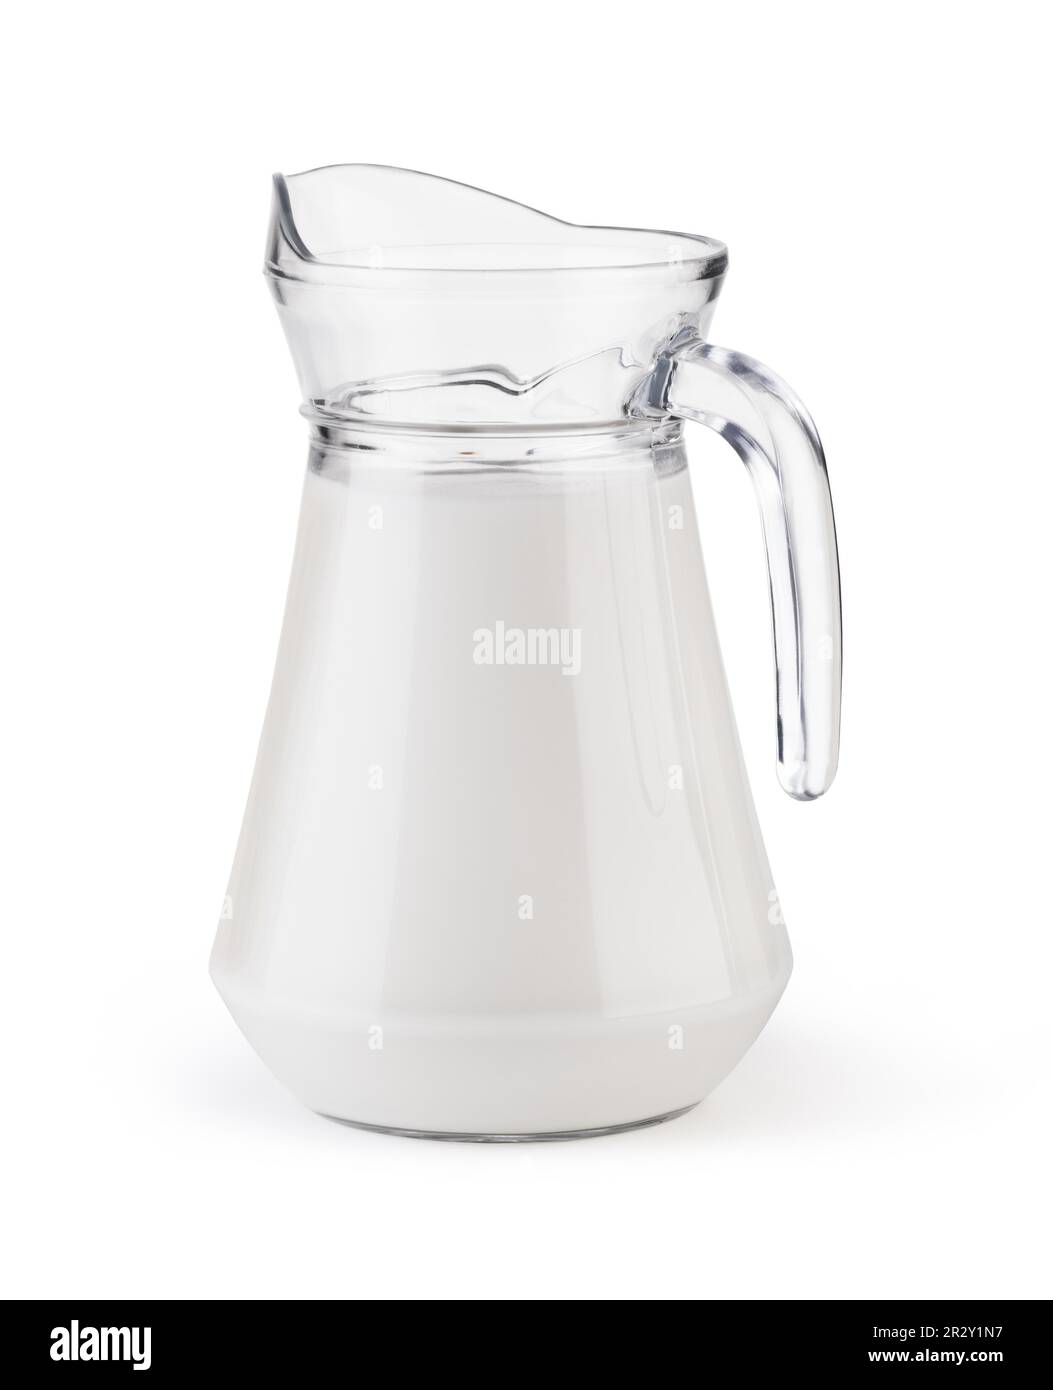 Cierra la jarra de leche. jarra de leche aislado sobre fondo blanco.  trazado de recorte. jarra de leche de cristal.